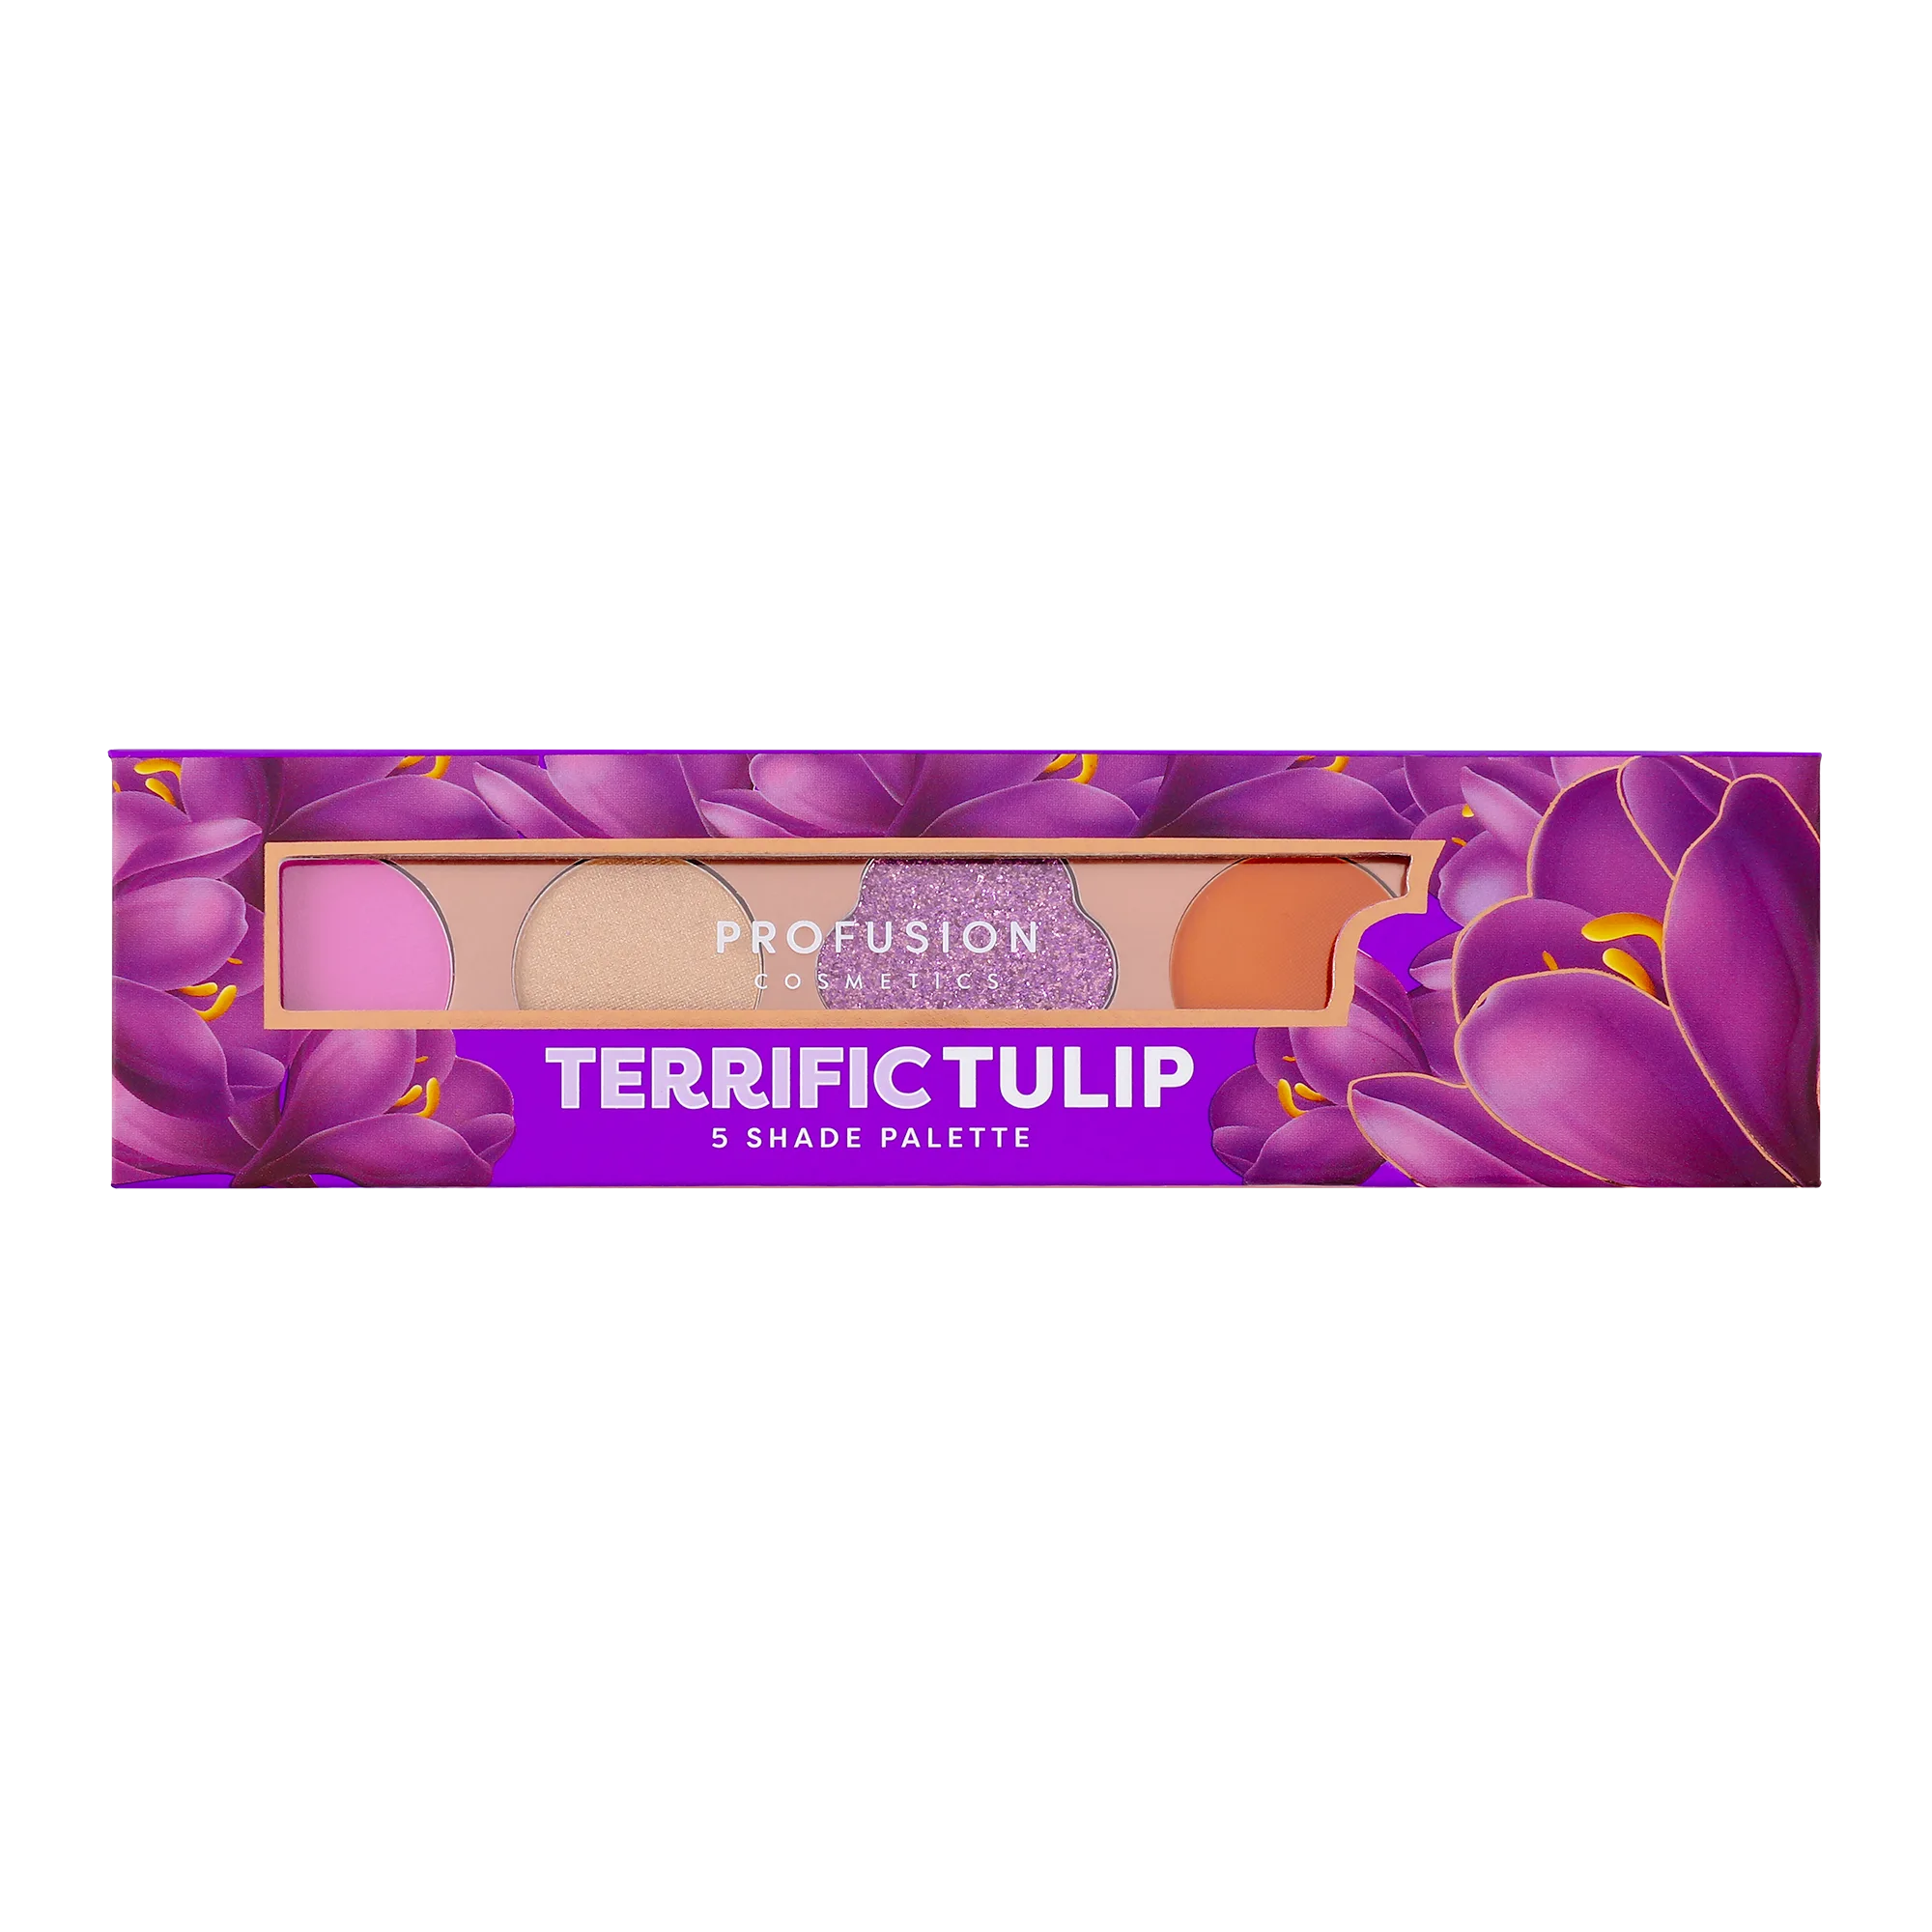 Terrific Tulip